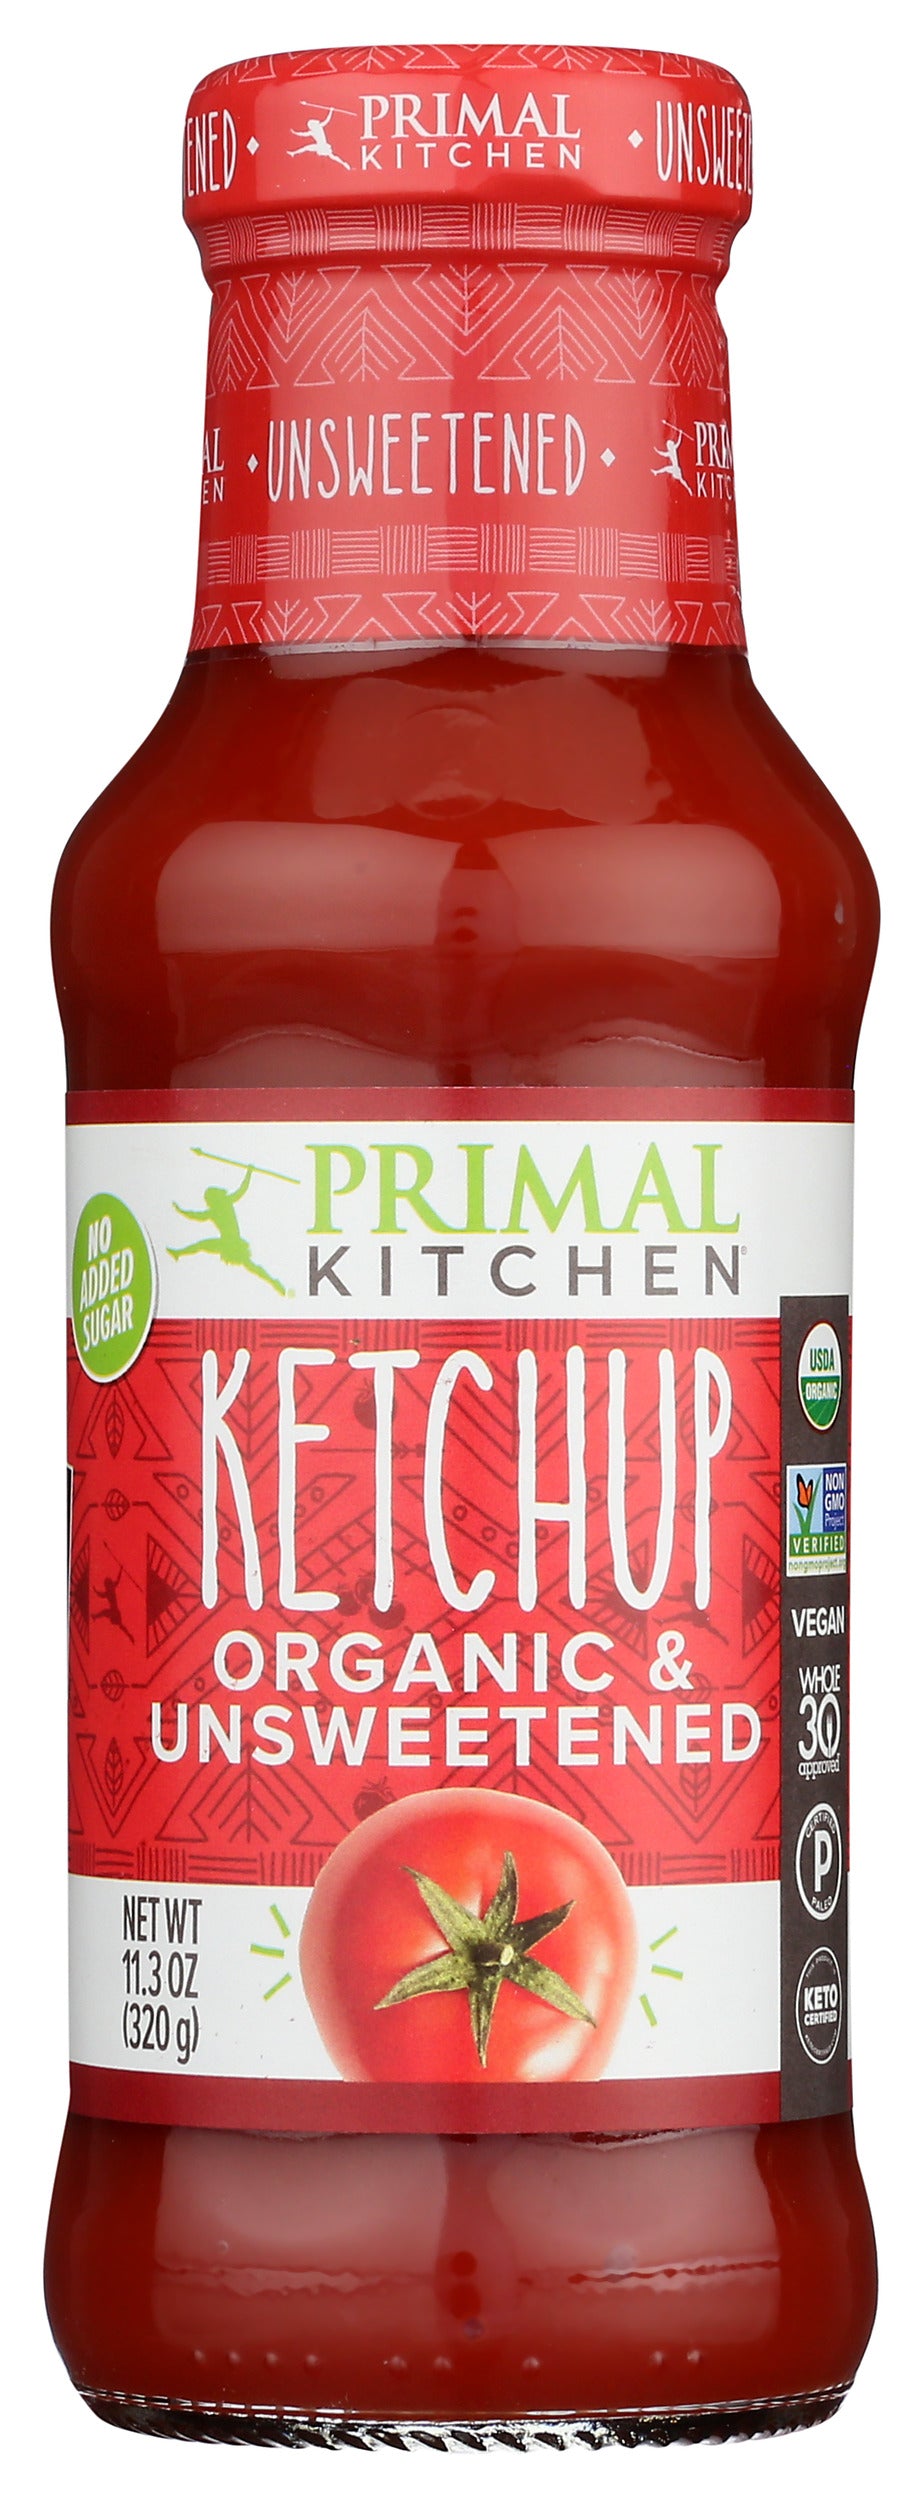 Primal Kitchen Organic & Unsweetened Ketchup 11.3 oz